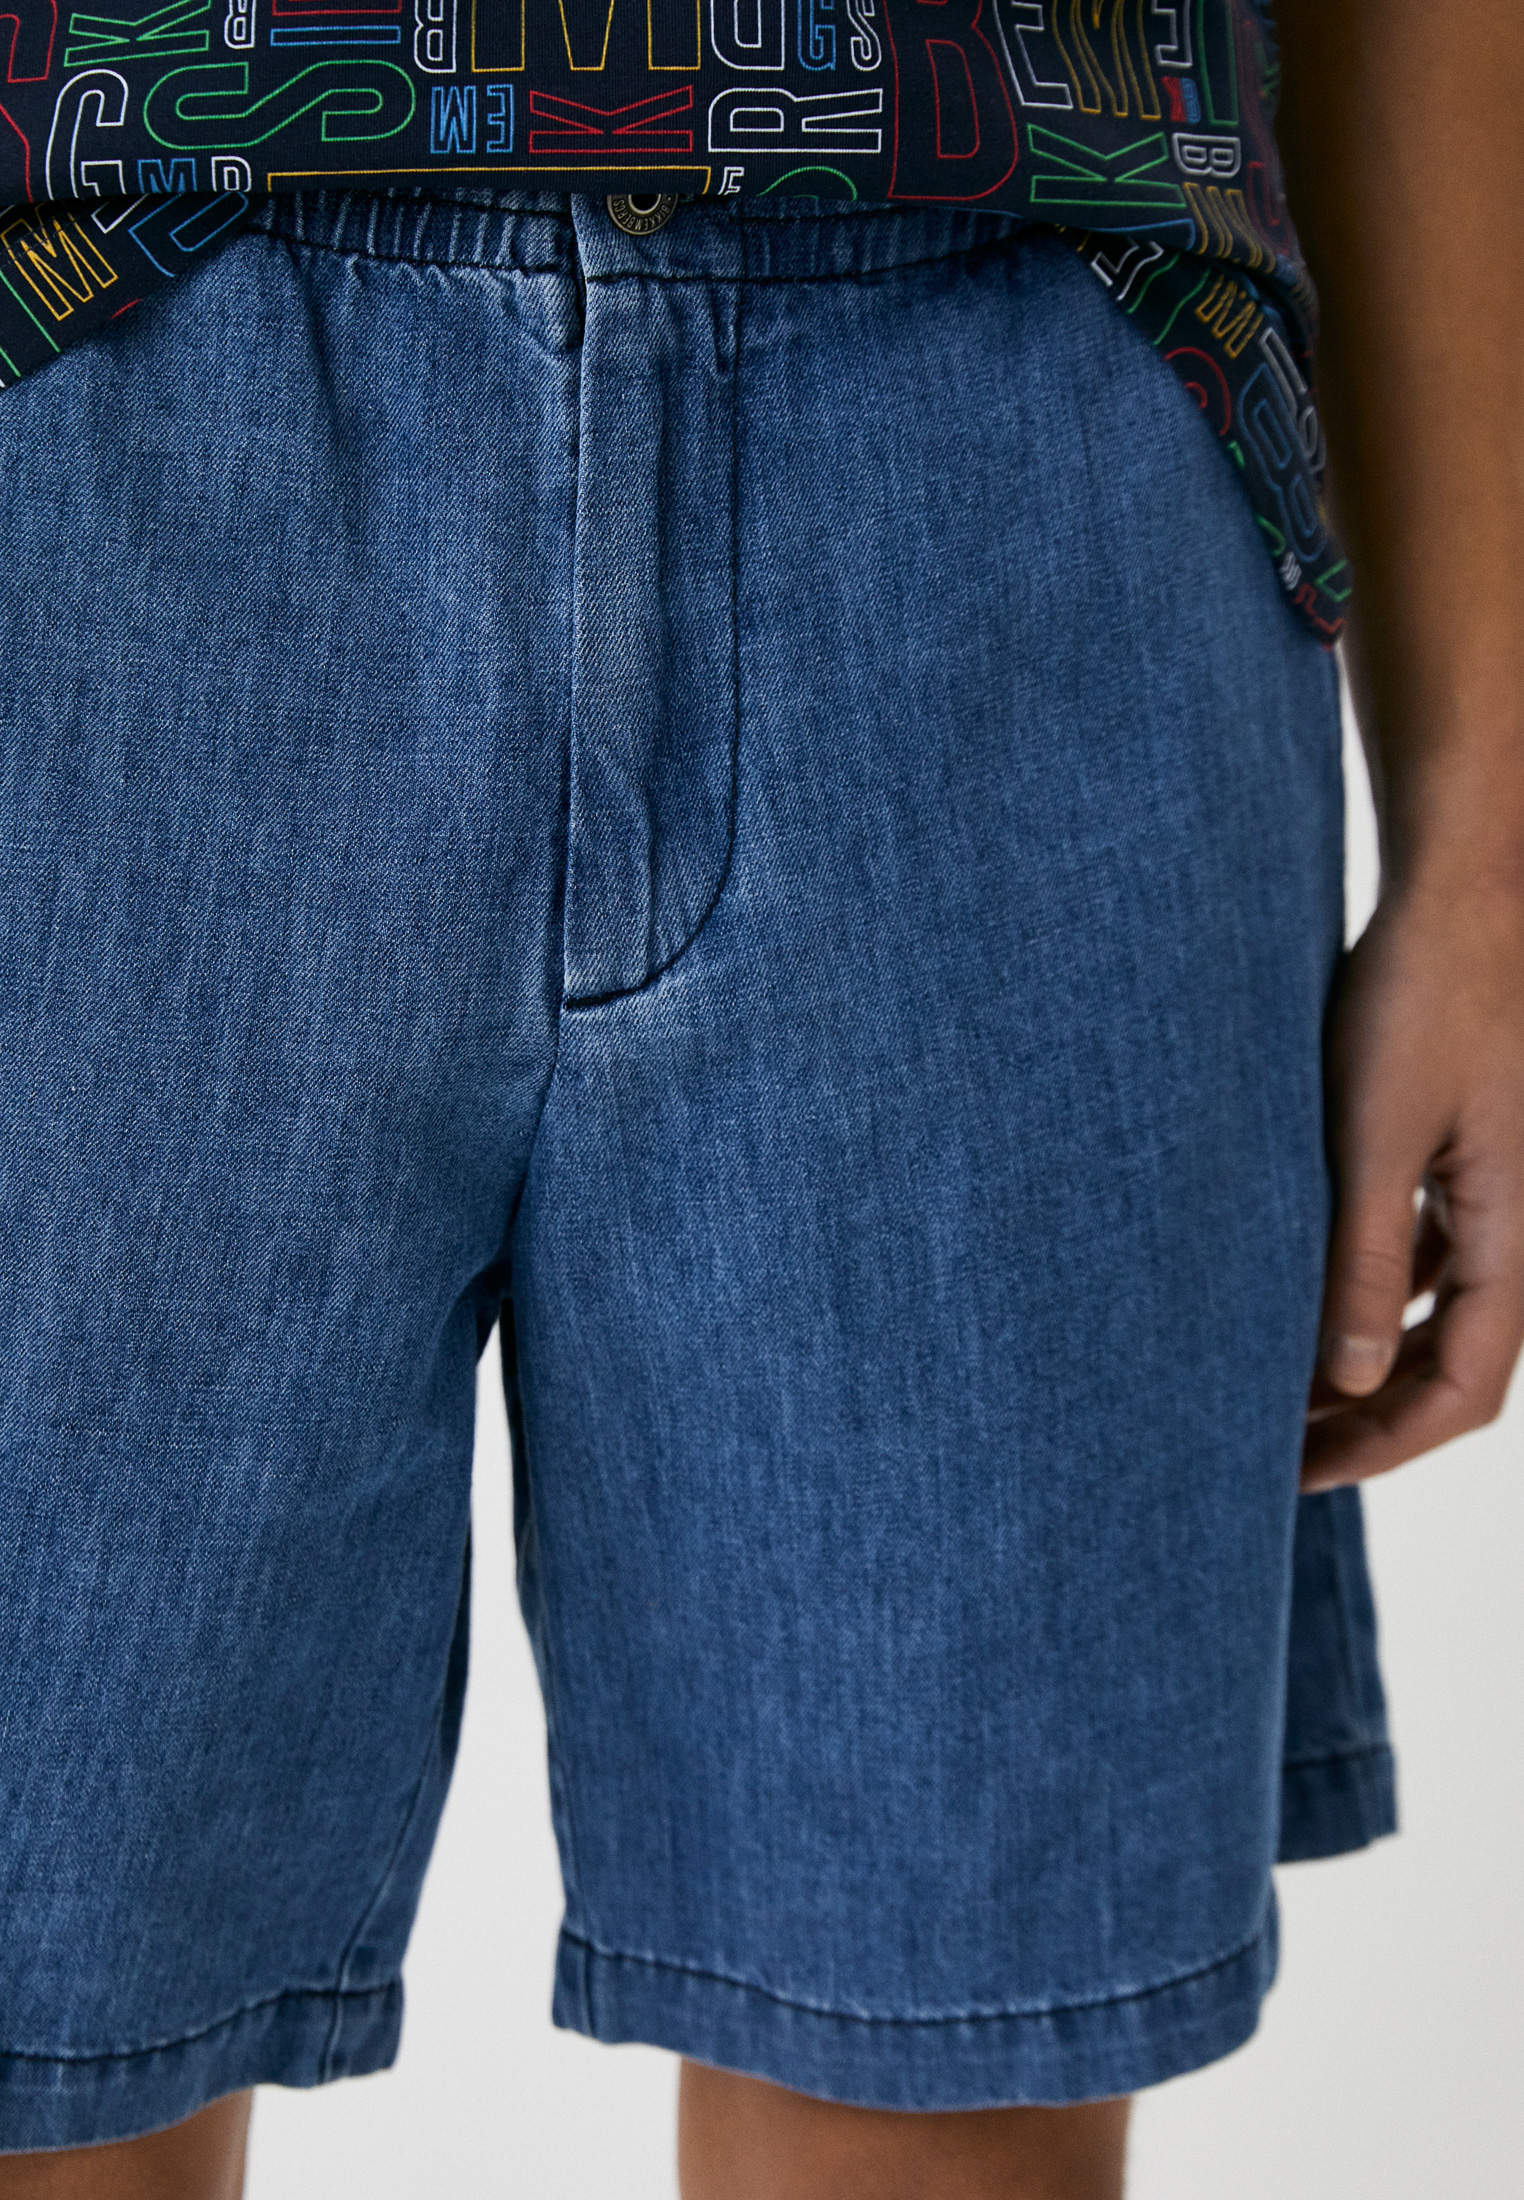 Мужские джинсовые шорты Bikkembergs (Биккембергс) CO01501T093A: изображение 4